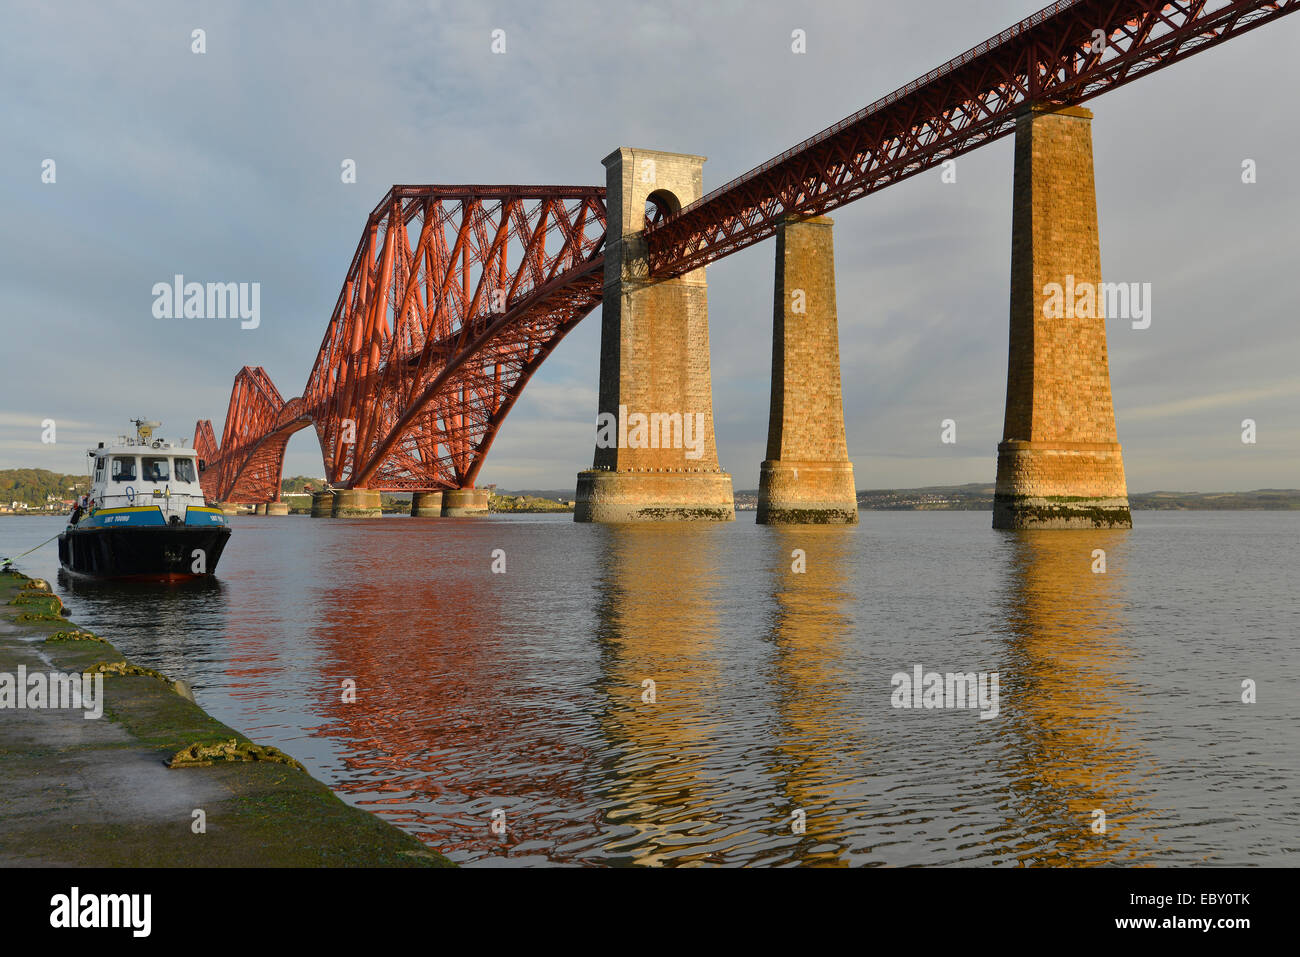 Bootsanleger neben Forth Brücke Eisenbahnbrücke über den Firth of Forth, Queensferry, Edinburgh, Schottland, Vereinigtes Königreich Stockfoto